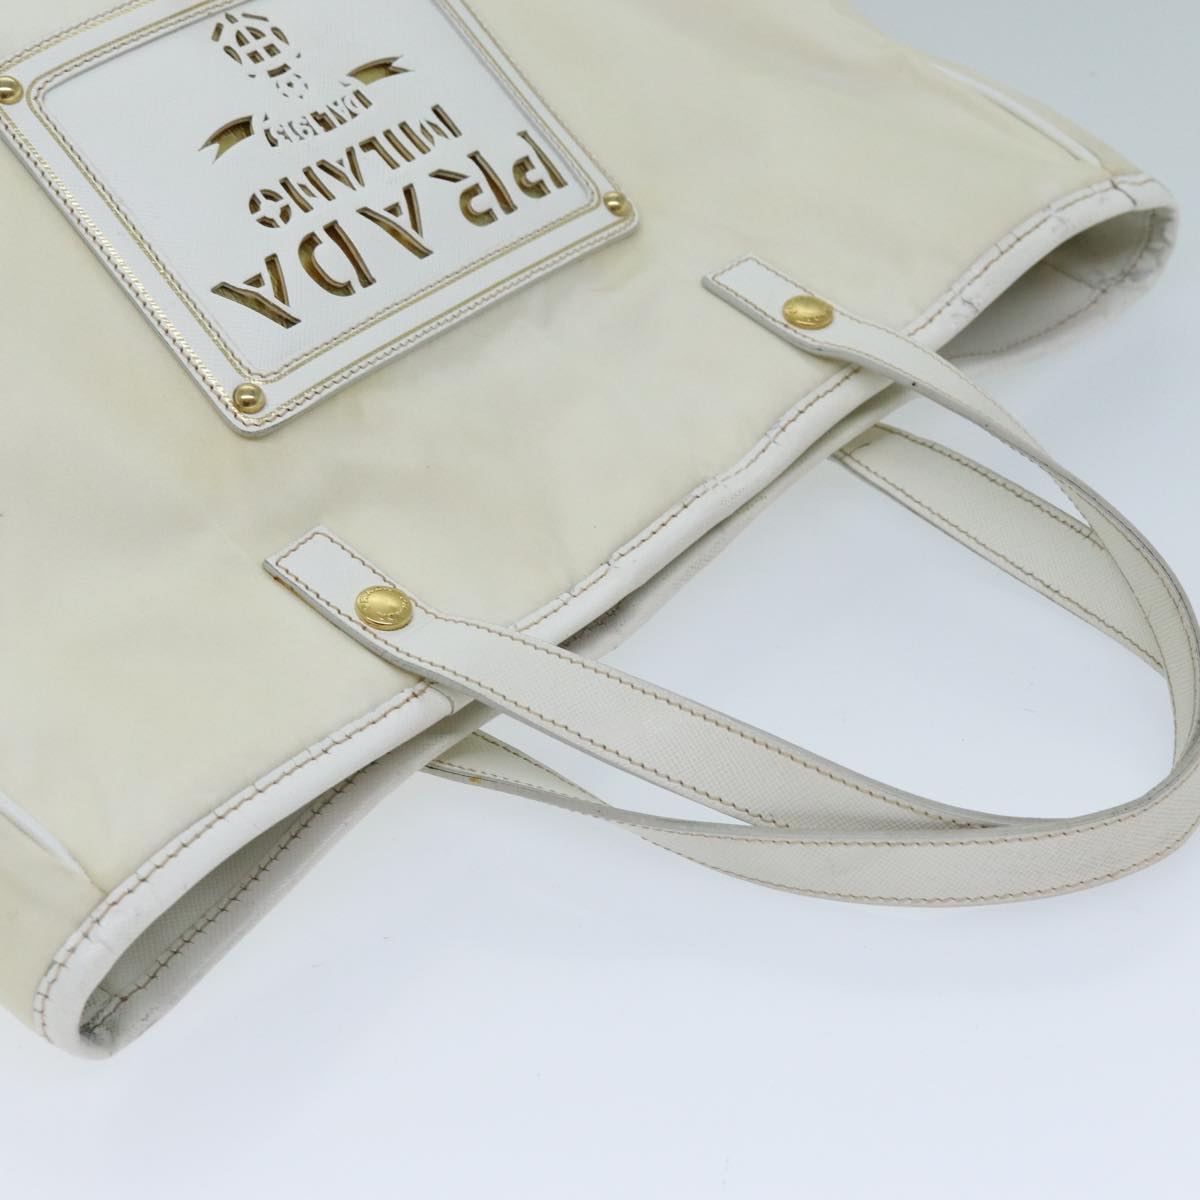 PRADA Tote Bag Nylon 2way White Auth 73106